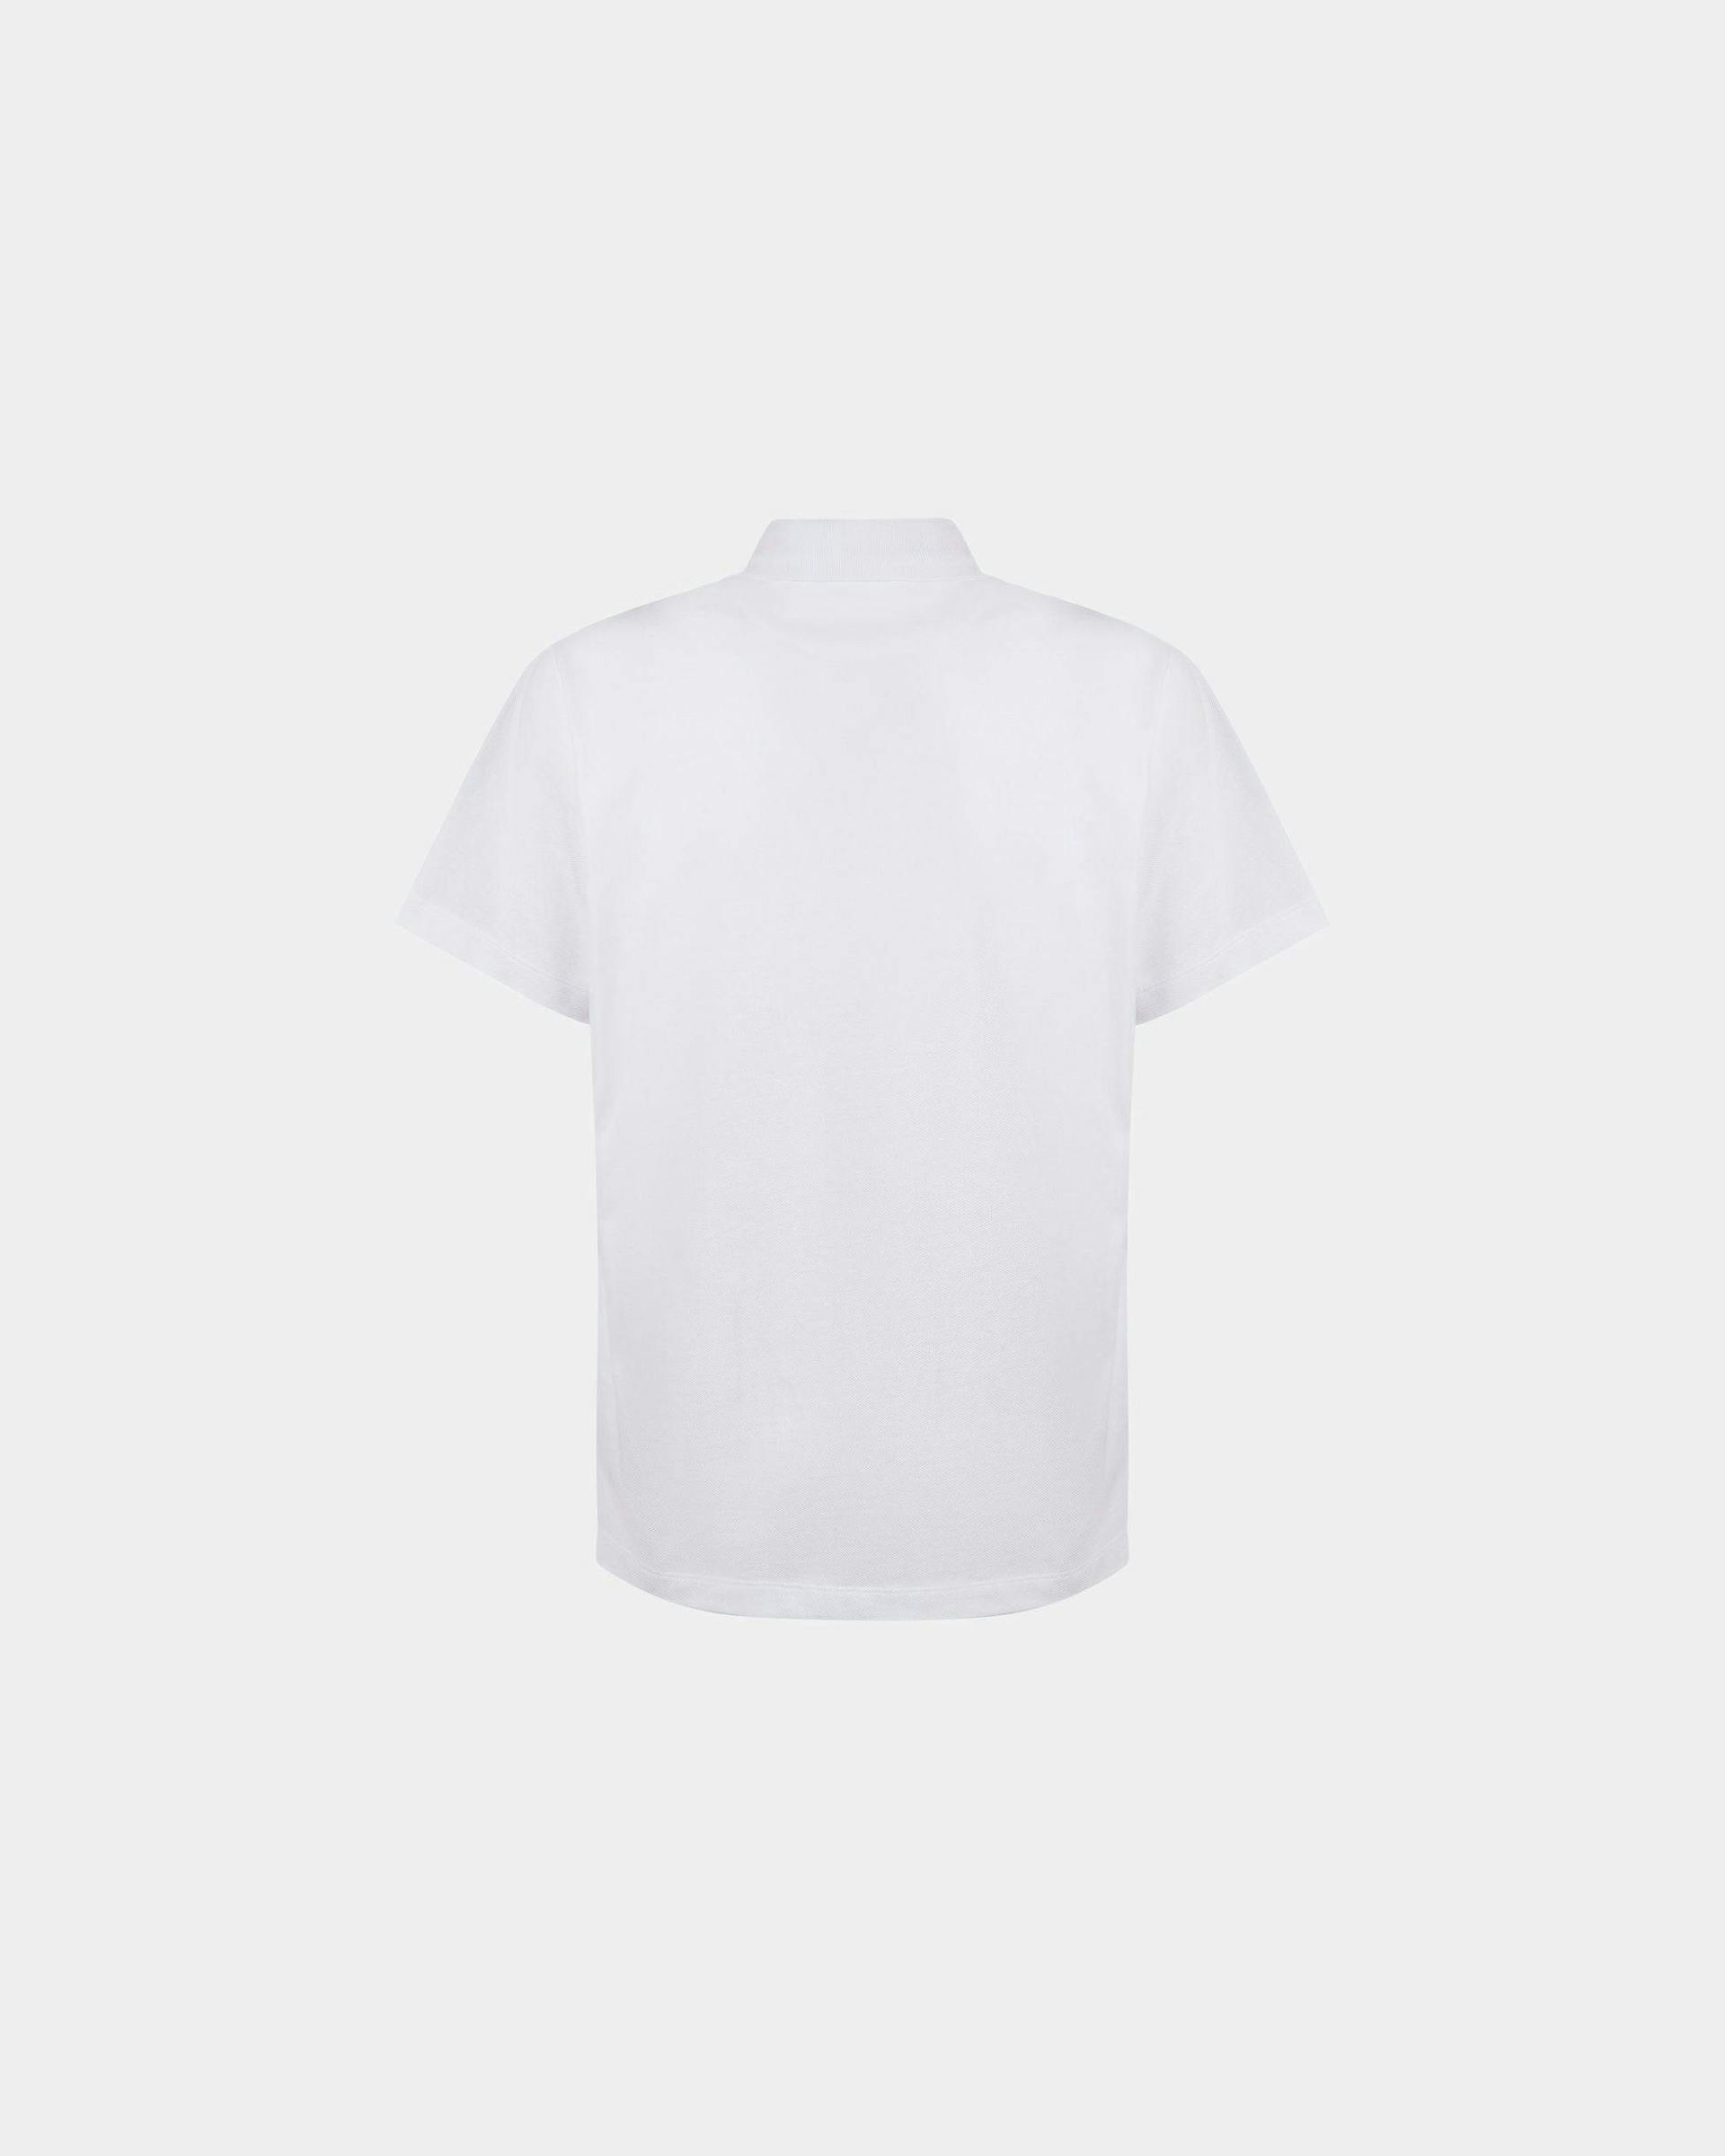 Men's Polo Shirt in White Cotton | Bally | Still Life Back